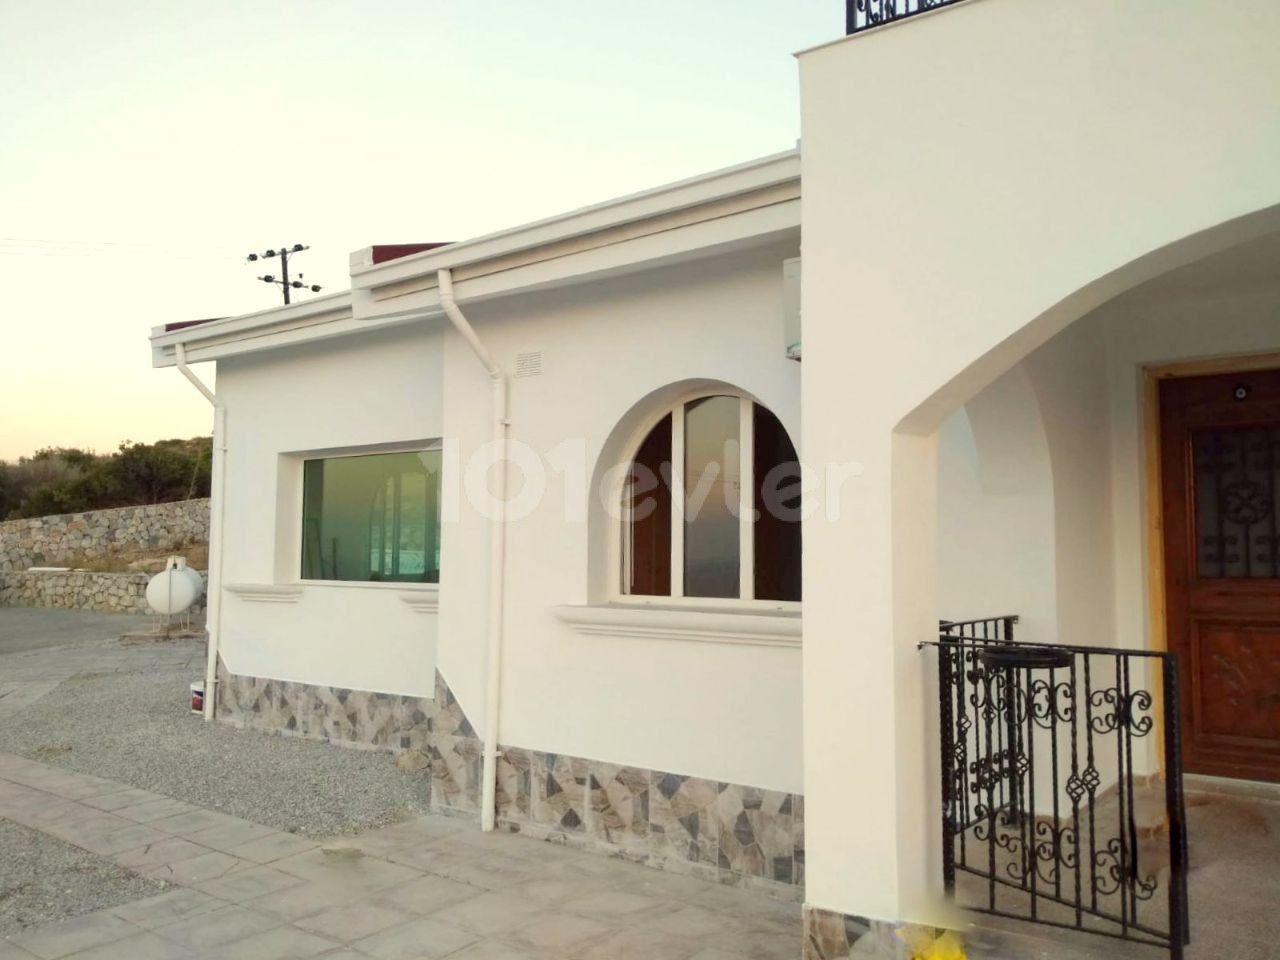 Girne, Alsancak, Yeşiltepe bölgesinde 3 yatak oda kiralık villa. 05338403555